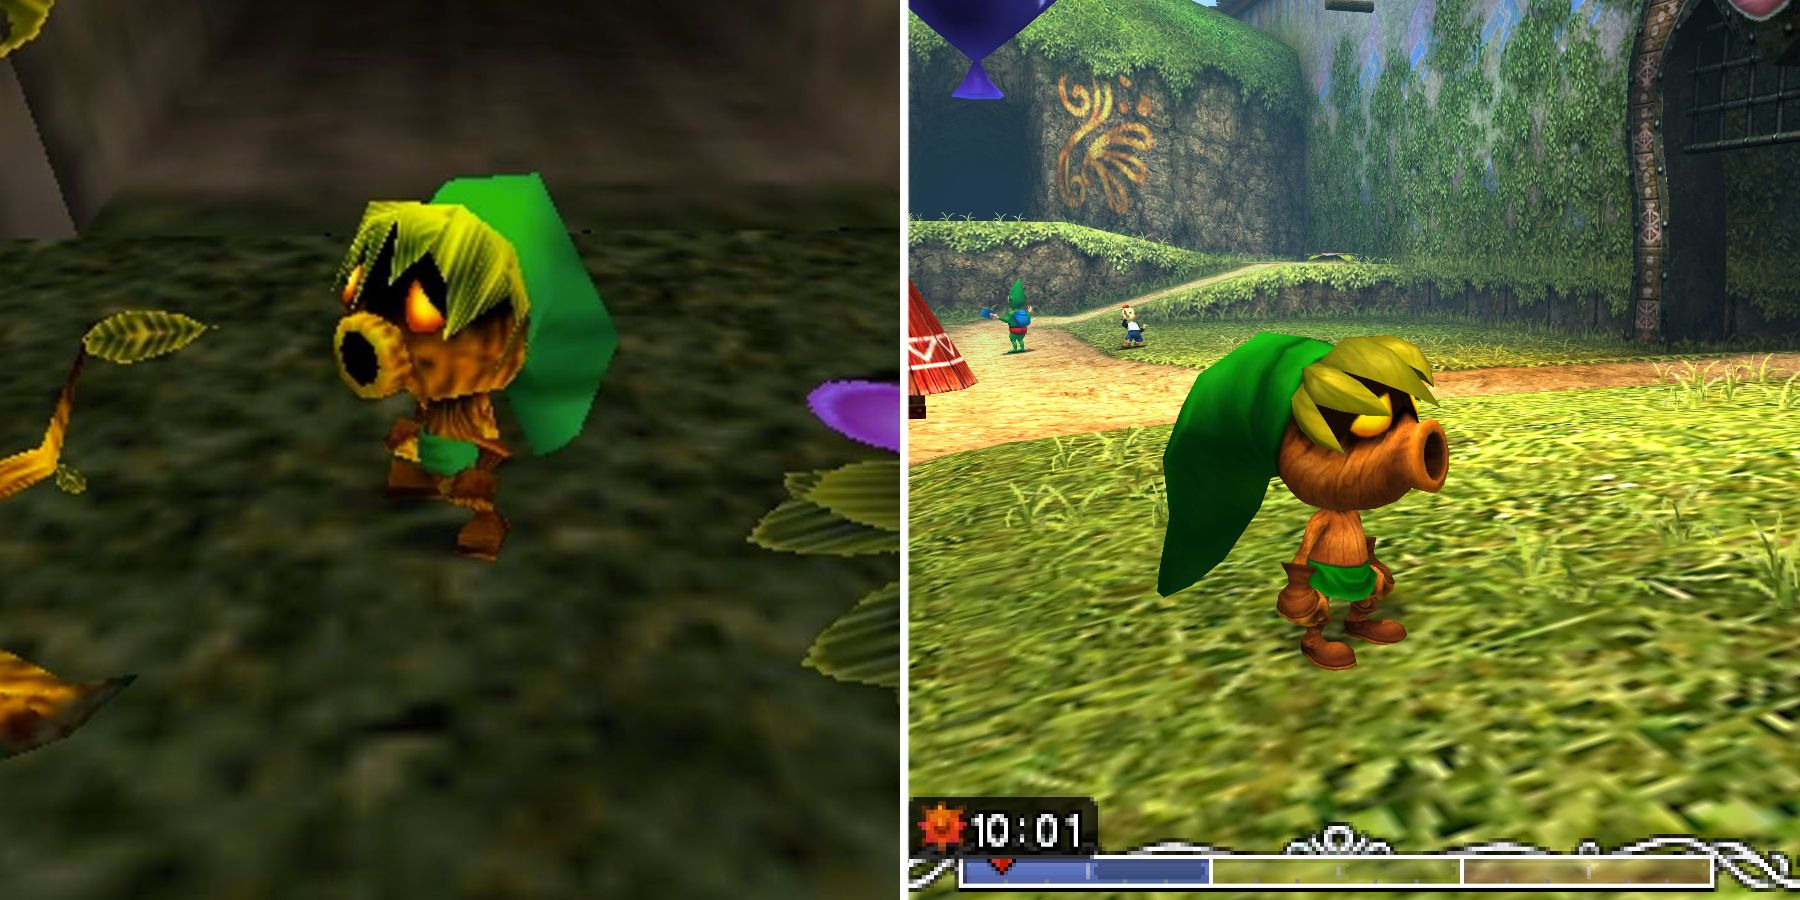 Deku Link in The Legend of Zelda Majoras Mask